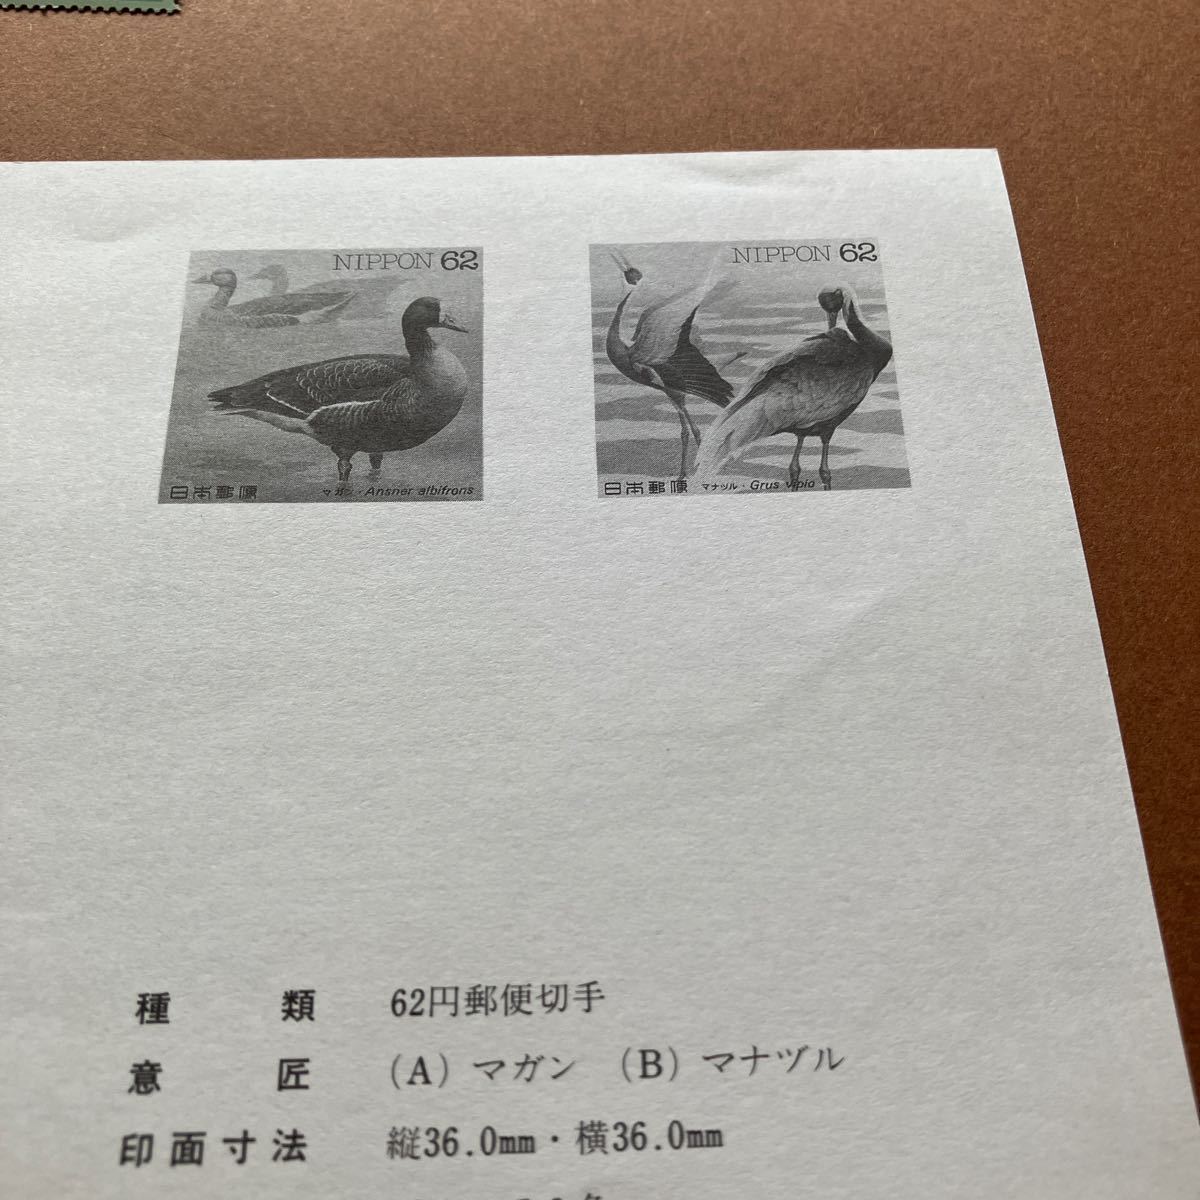  вода  сторона      птица  серия  ...7.../1993 год   выпуск /62  йен  марка  /...  разные /... пистолет  /.../... лады  ( инструкция  ...) идет в комплекте / неиспользуемый /... птица 